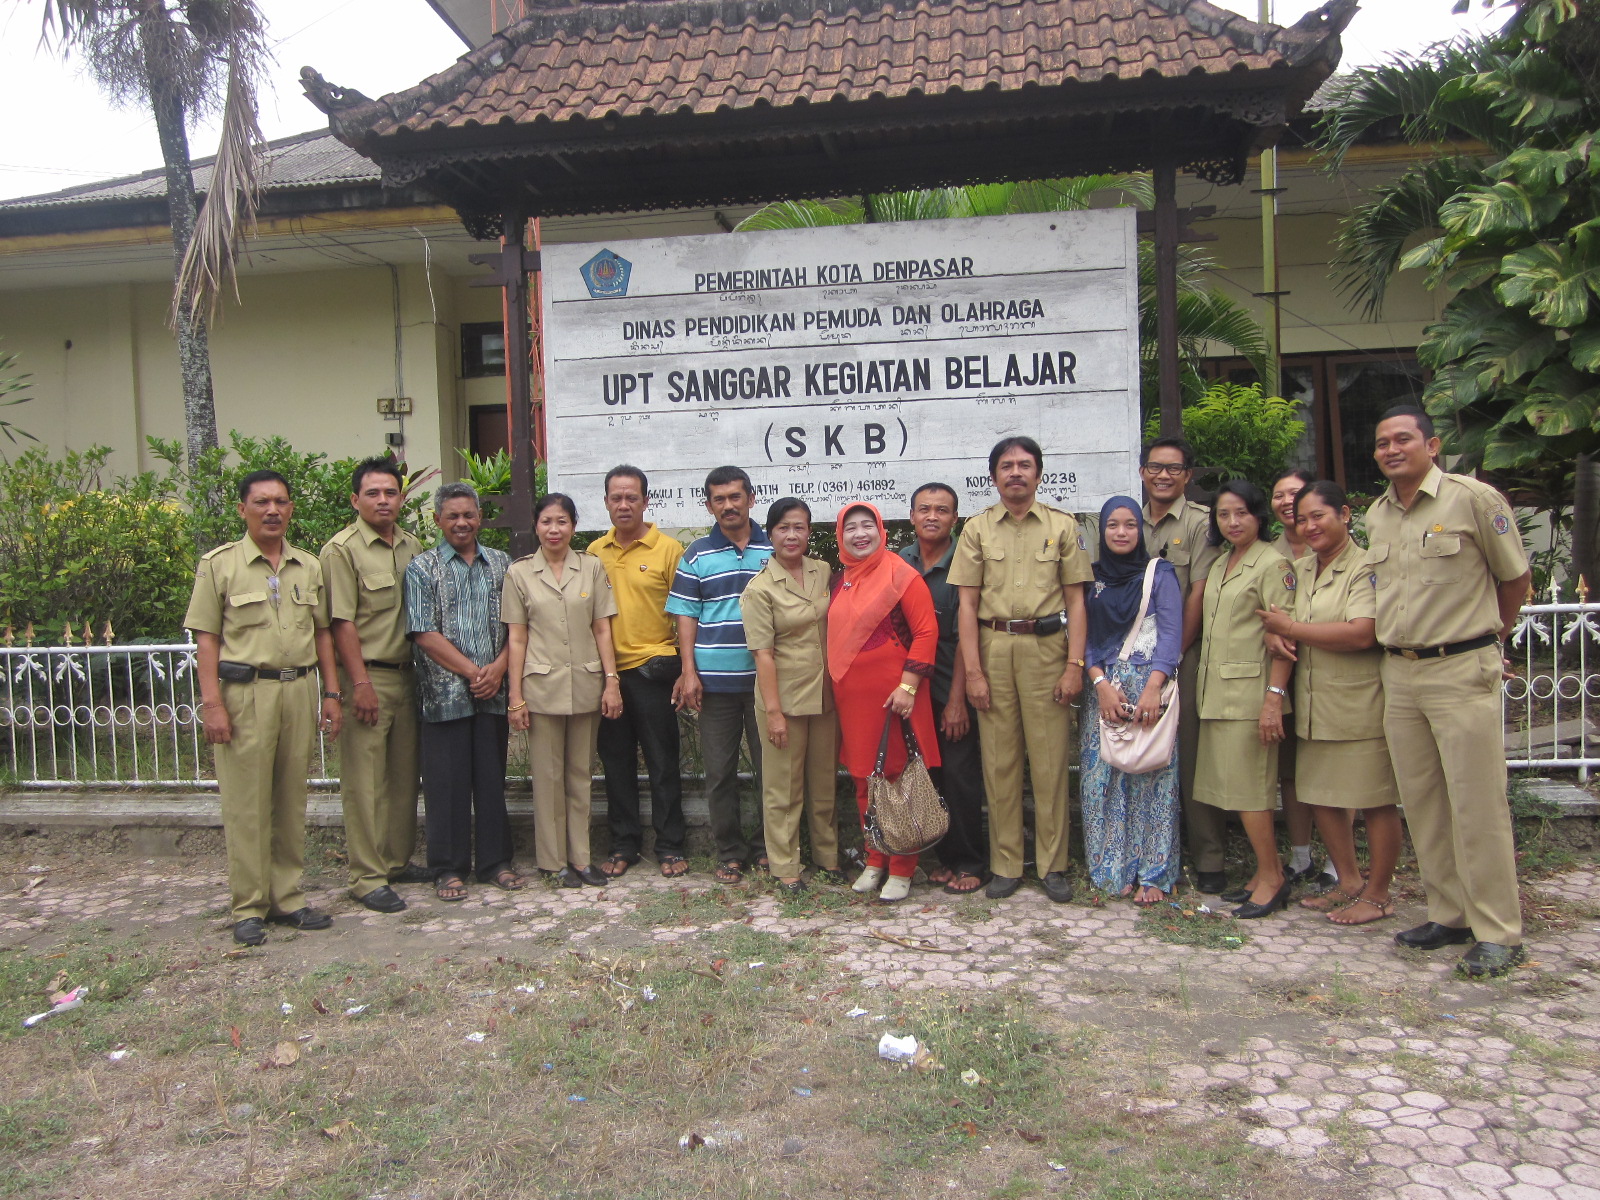 Pada hari Rabu tanggal 7 Nopember 2012 UPT SKB Dinas Dikpora Kota Denpasar mendapat kunjungan dari UPTD SKB Kota Solok Sumatera Barat